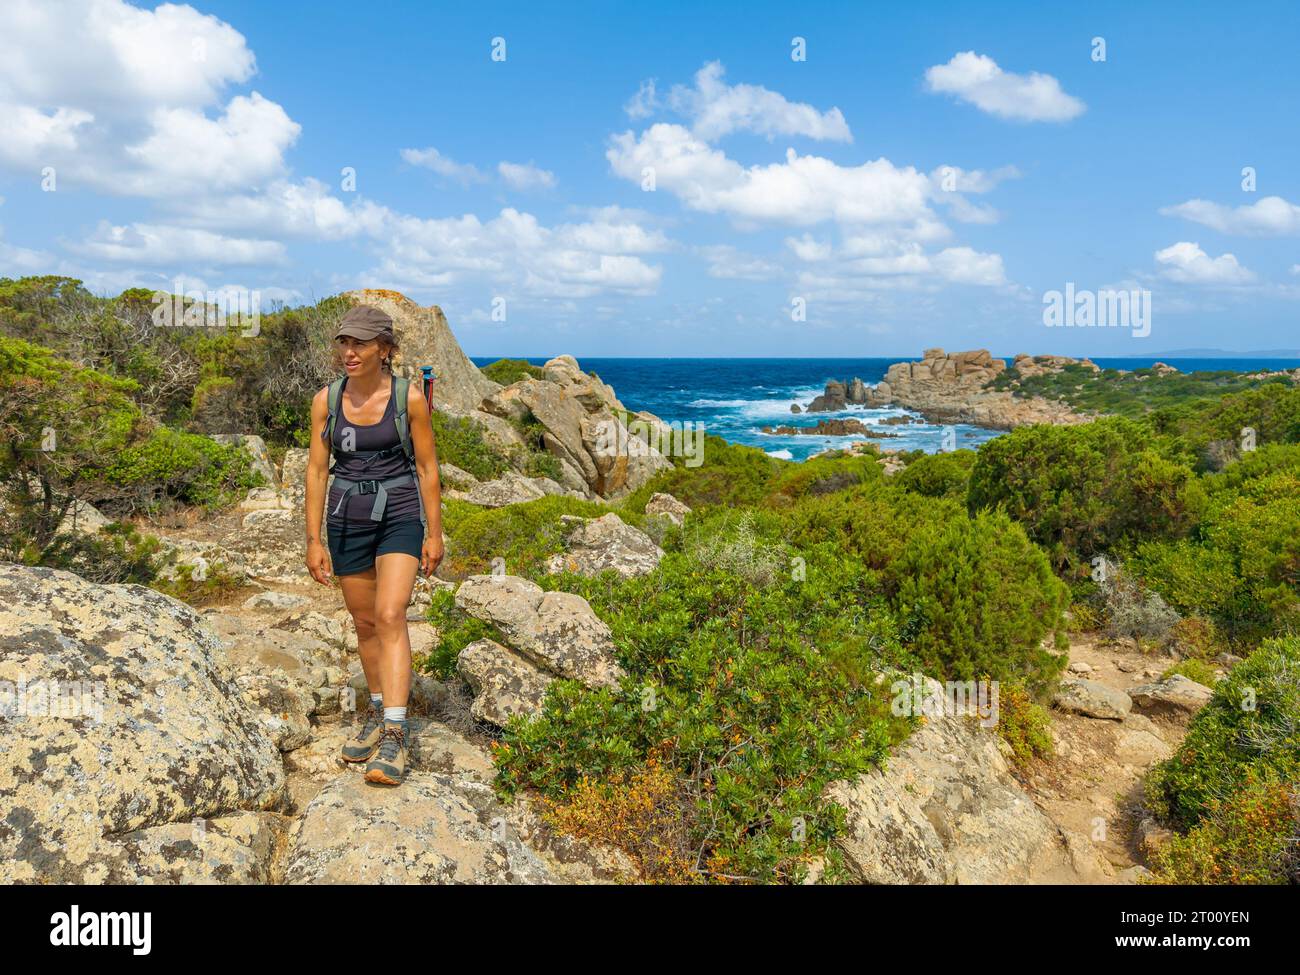 Corsica (Francia) - la Corsica è una grande isola turistica francese nel Mar Mediterraneo, con bellissime spiagge. Qui il Sentier du littoral di Campomoro Foto Stock